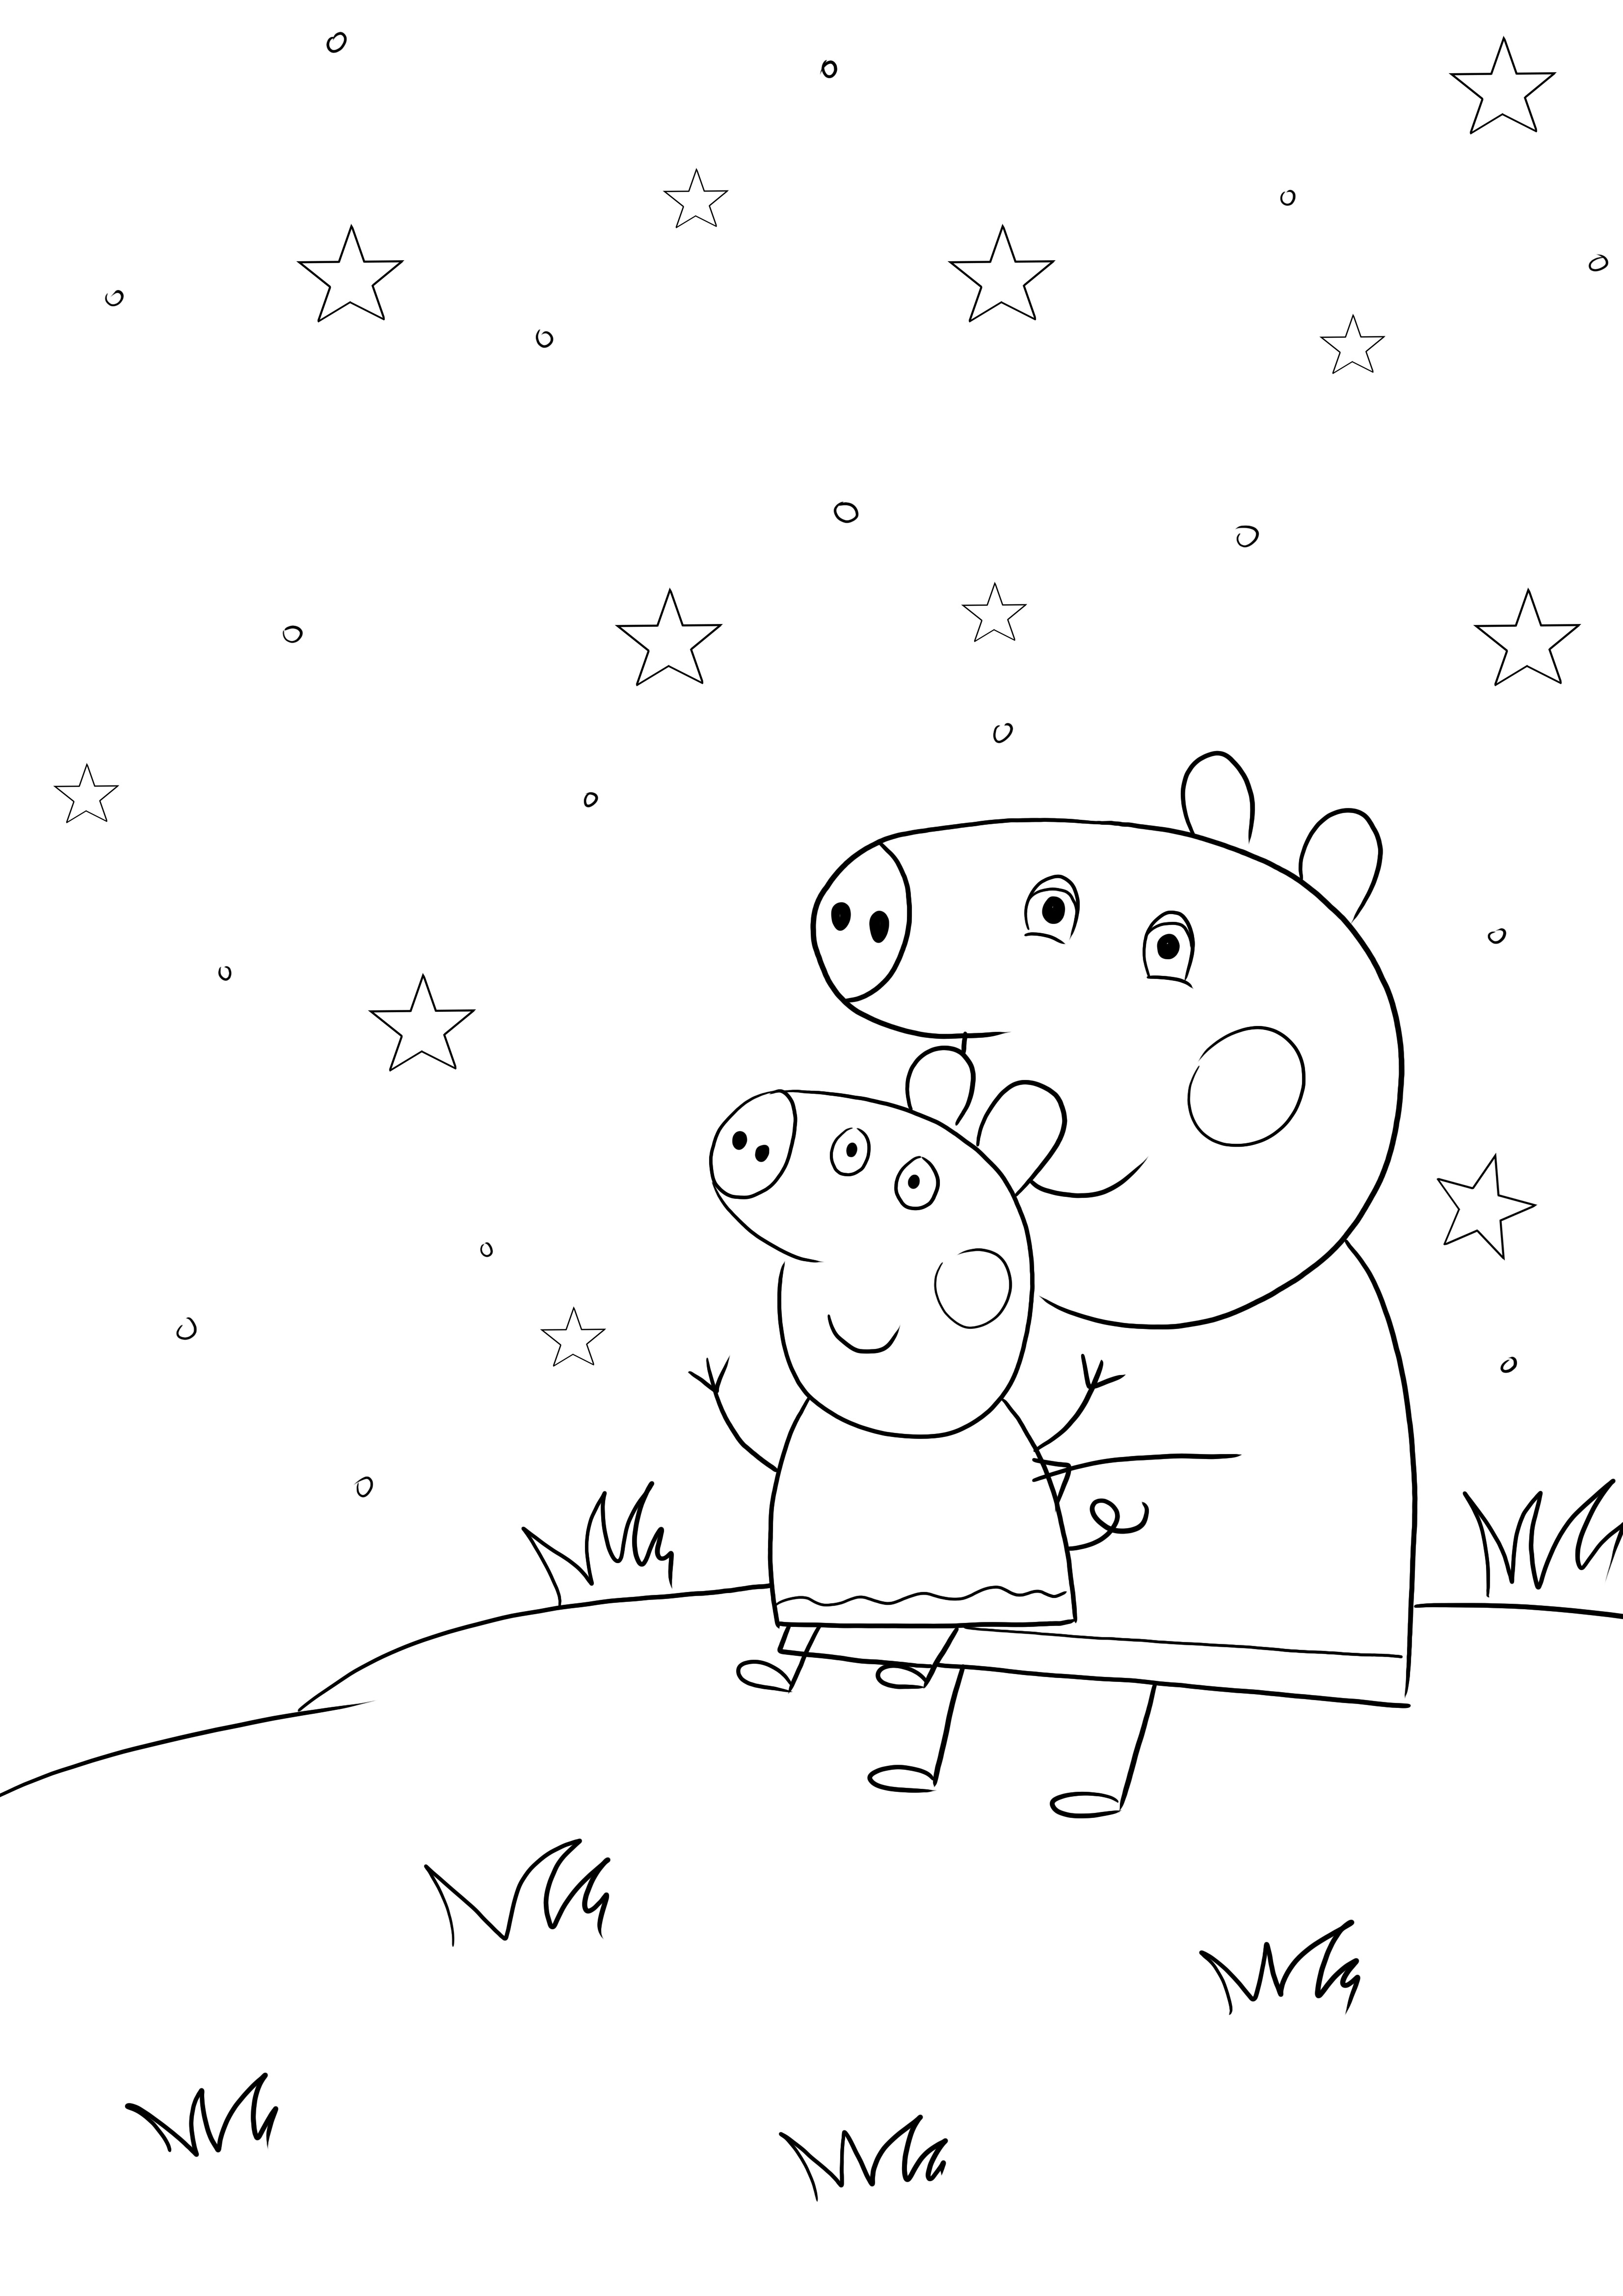 Mommy pig e Peppa pig immagini da colorare e stampare gratis per bambini